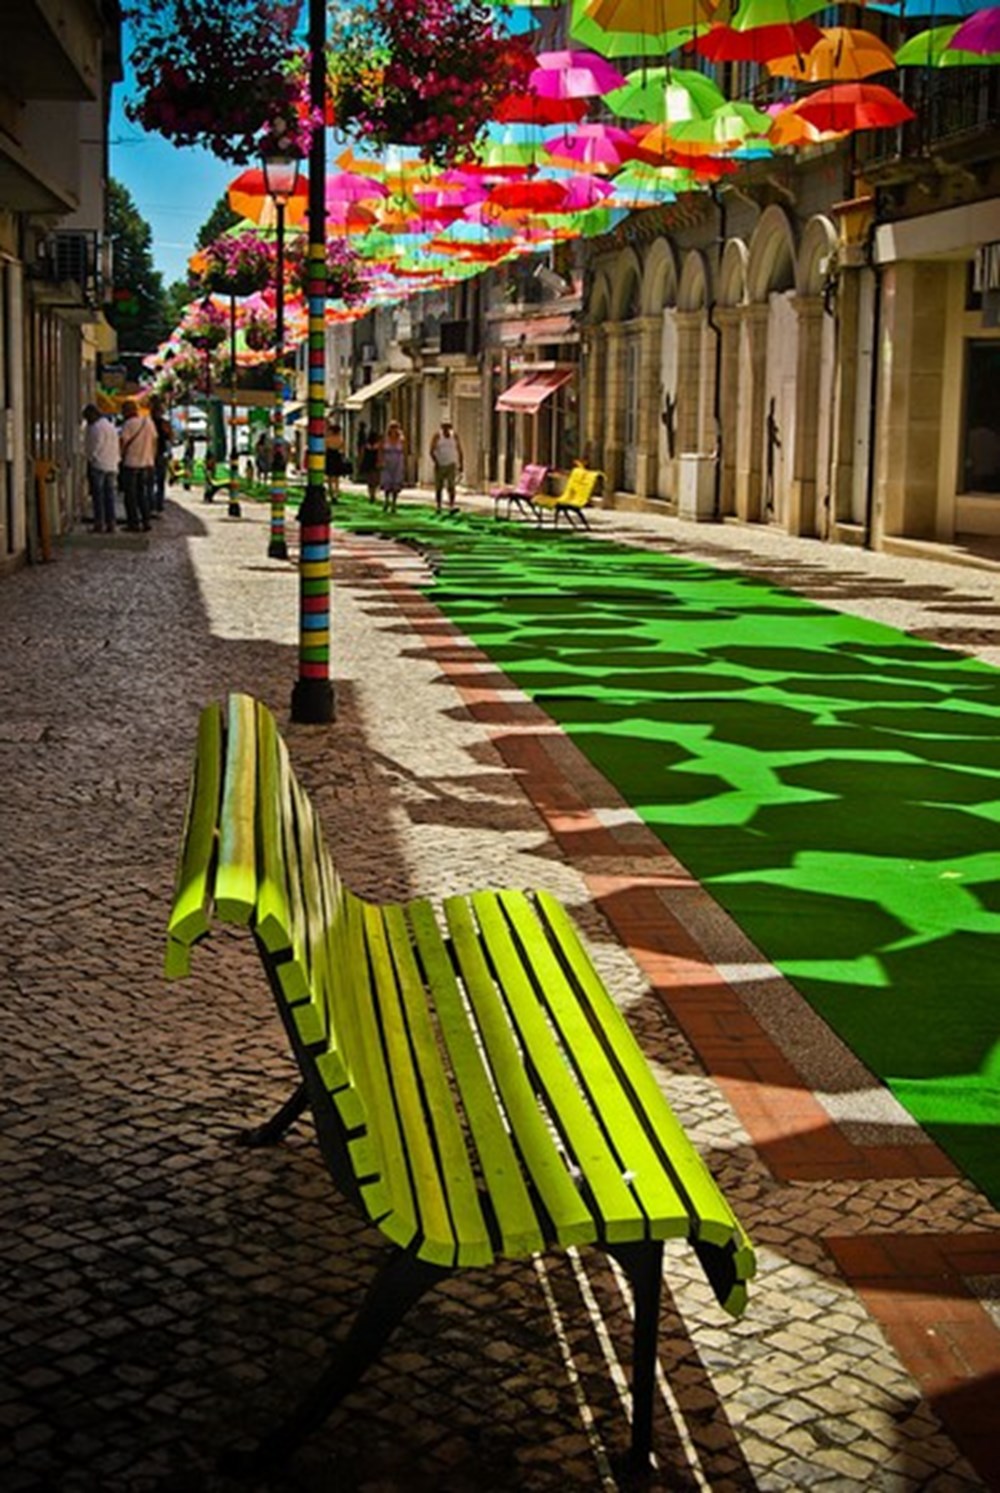 Улица парящих зонтиков, Агеда, Португалия